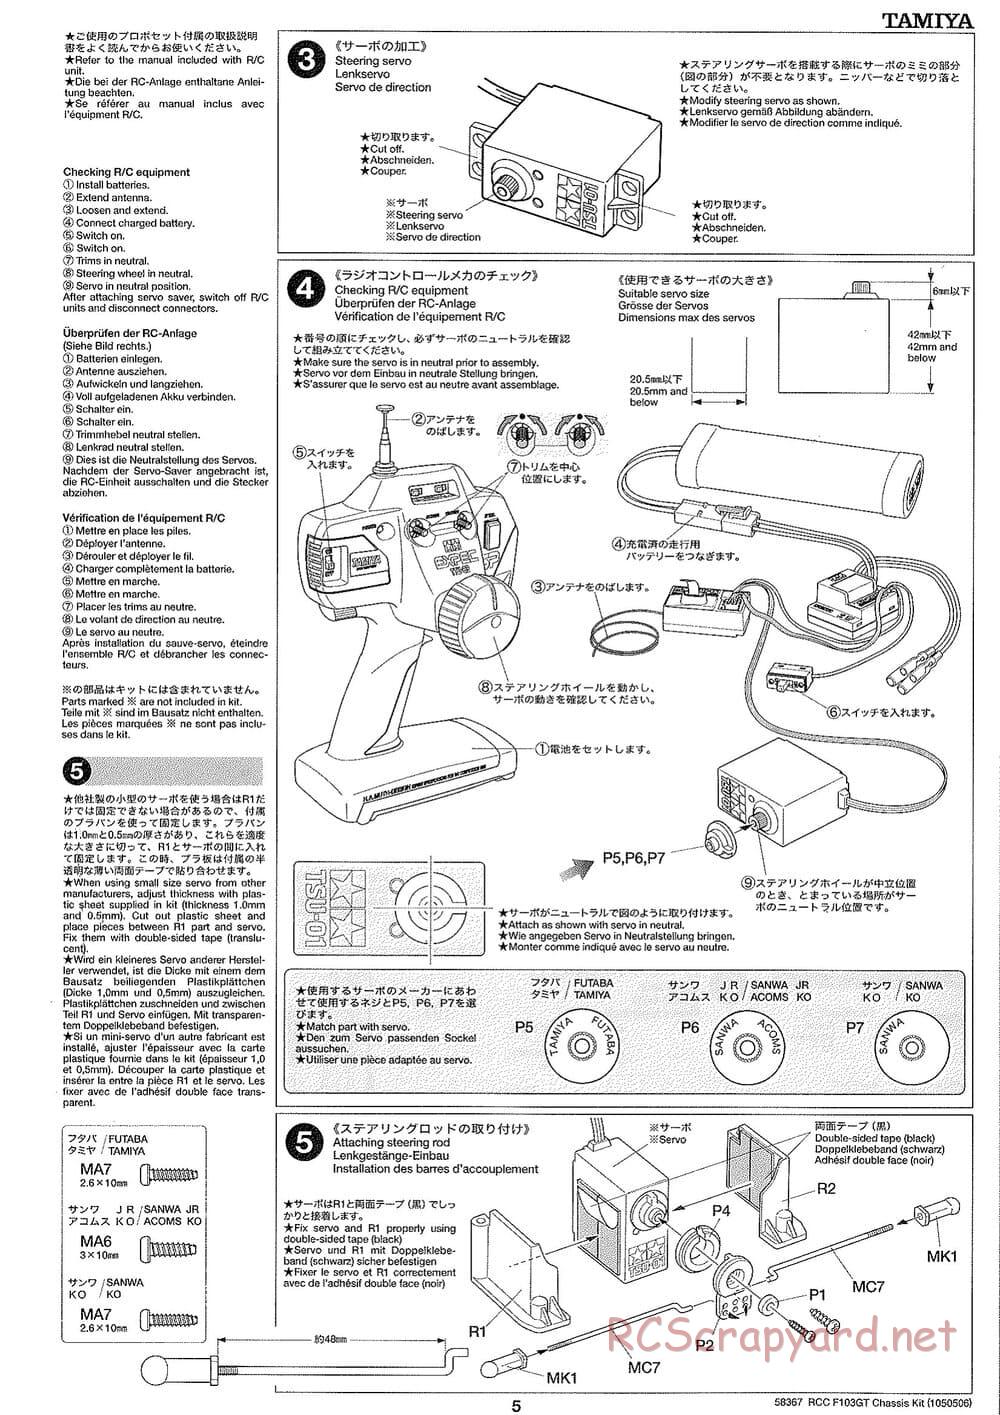 Tamiya - F103GT Chassis Kit - Manual - Page 5